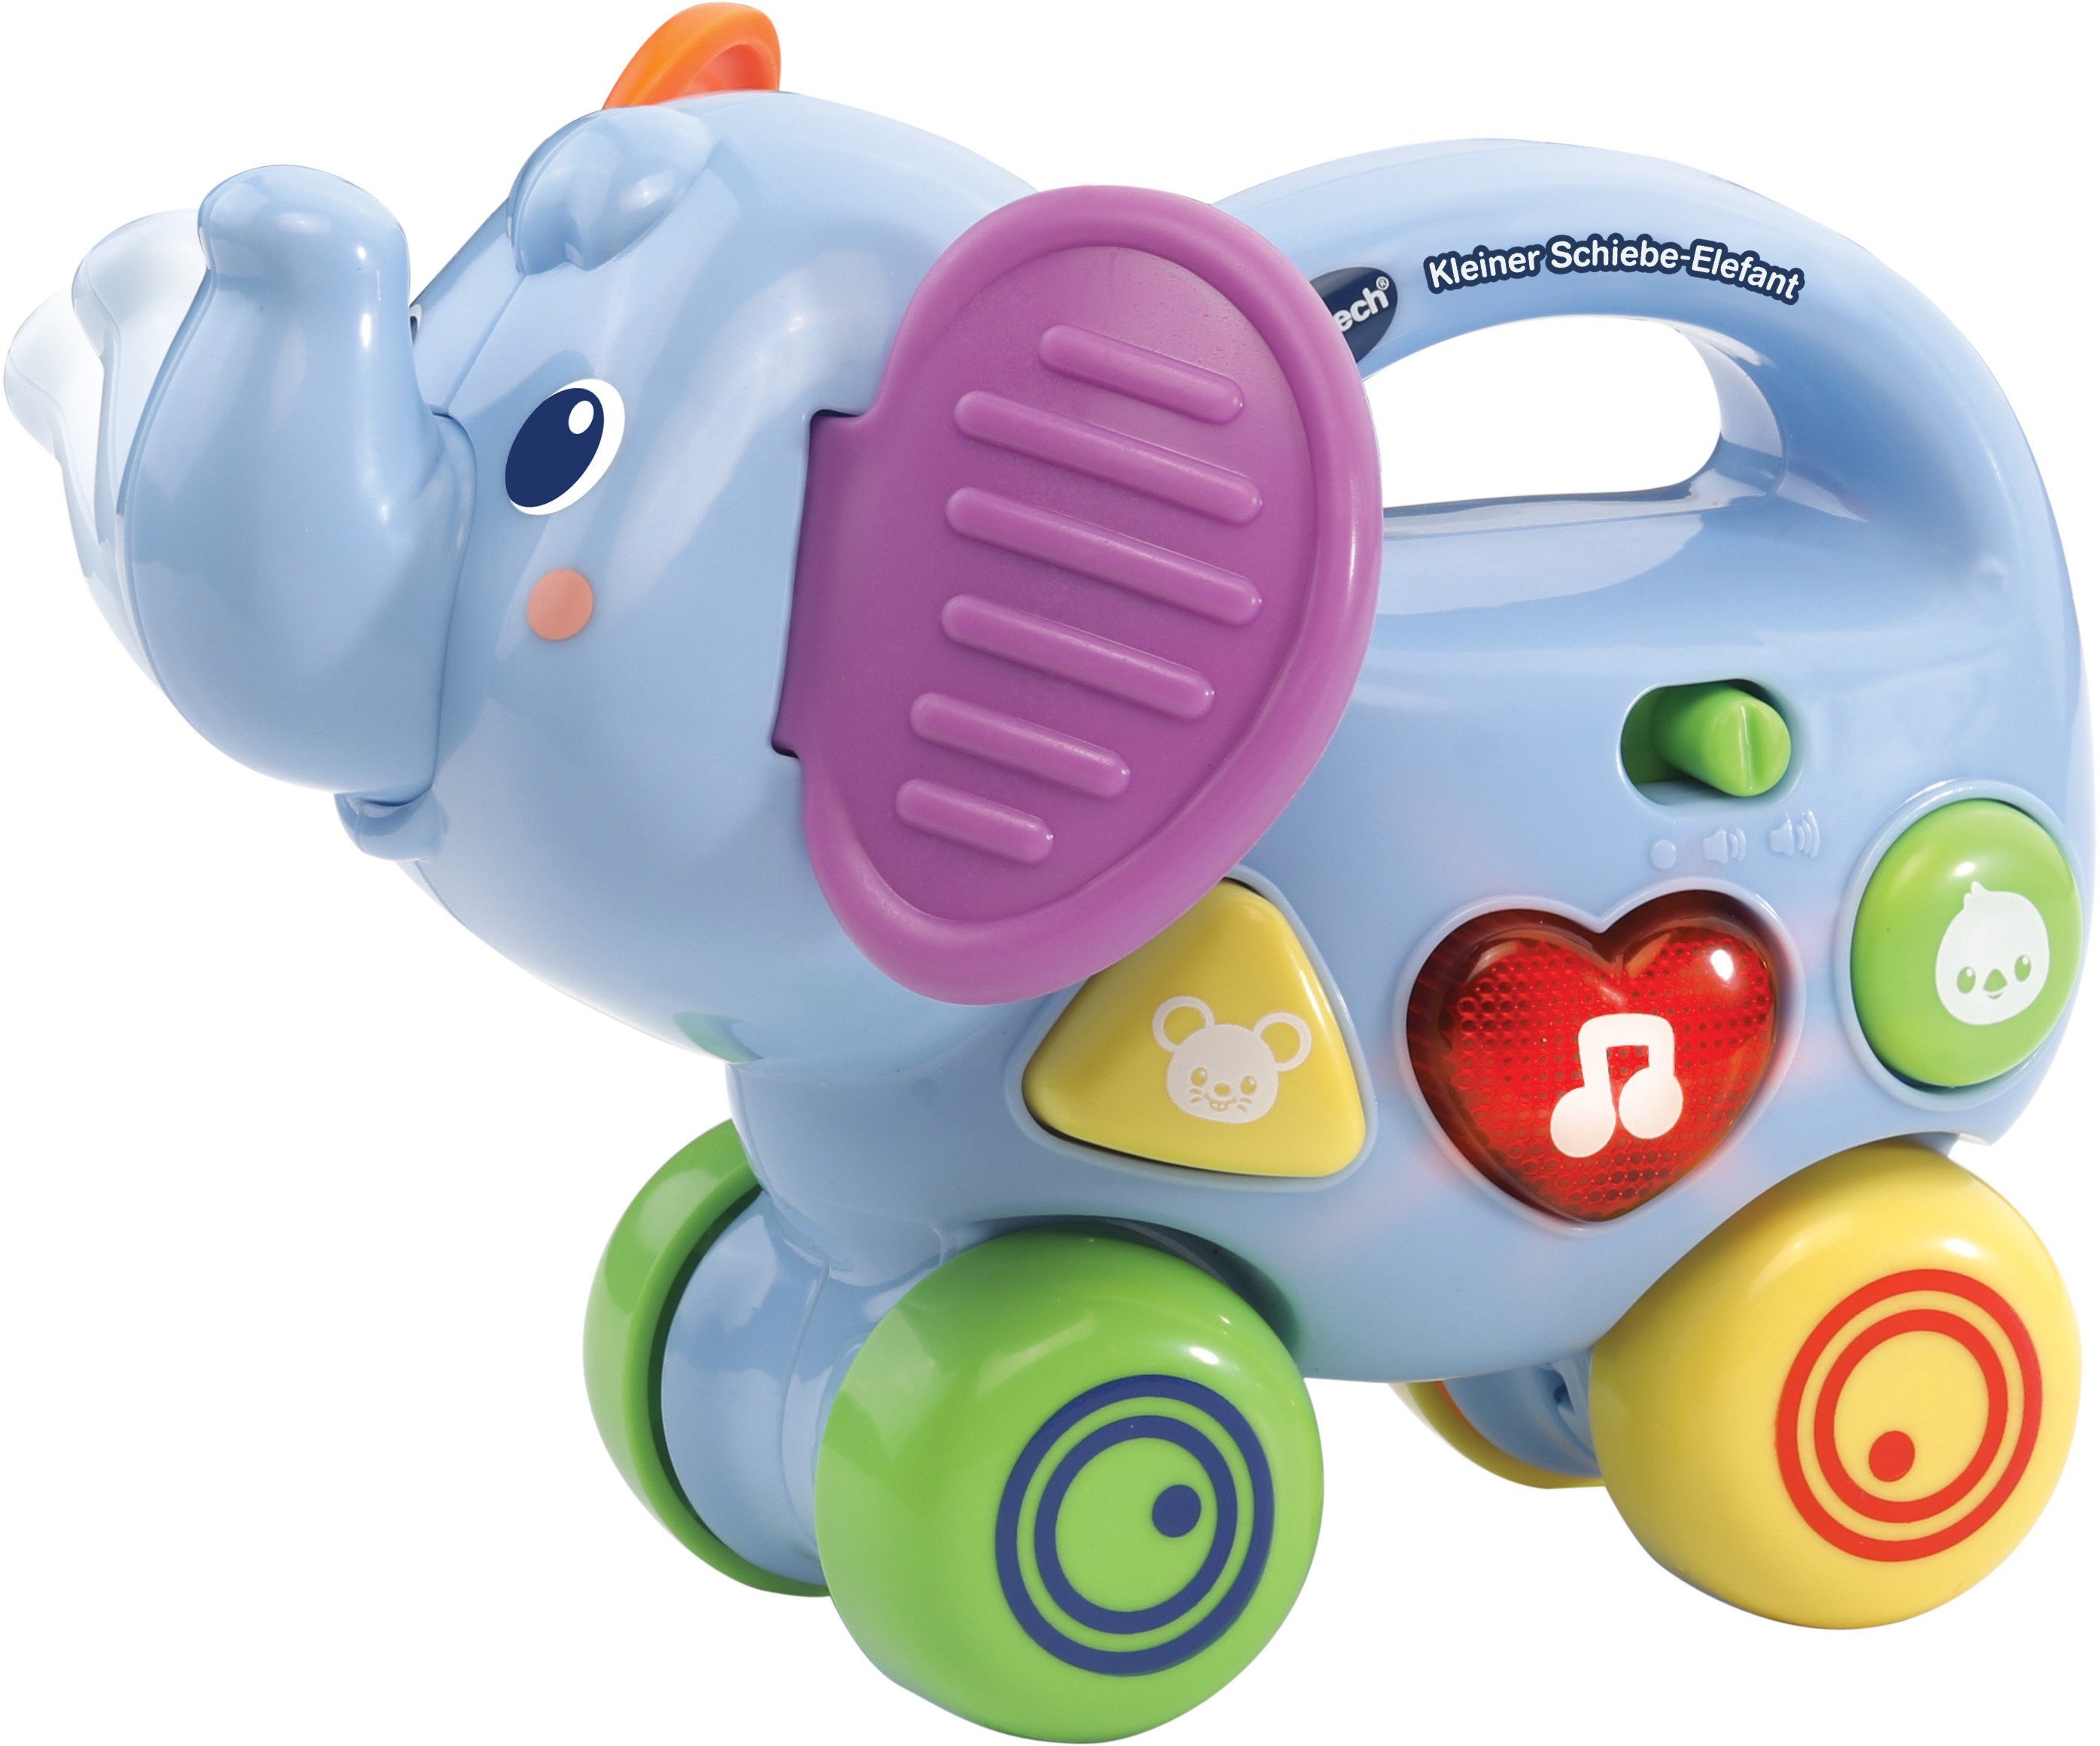 2 VTechBaby, Kleiner zu Schiebe-Elefant, um über Vtech® Tasten, lernen mit Lernspielzeug bunten Sound, etwas Formen und Tiere Mit